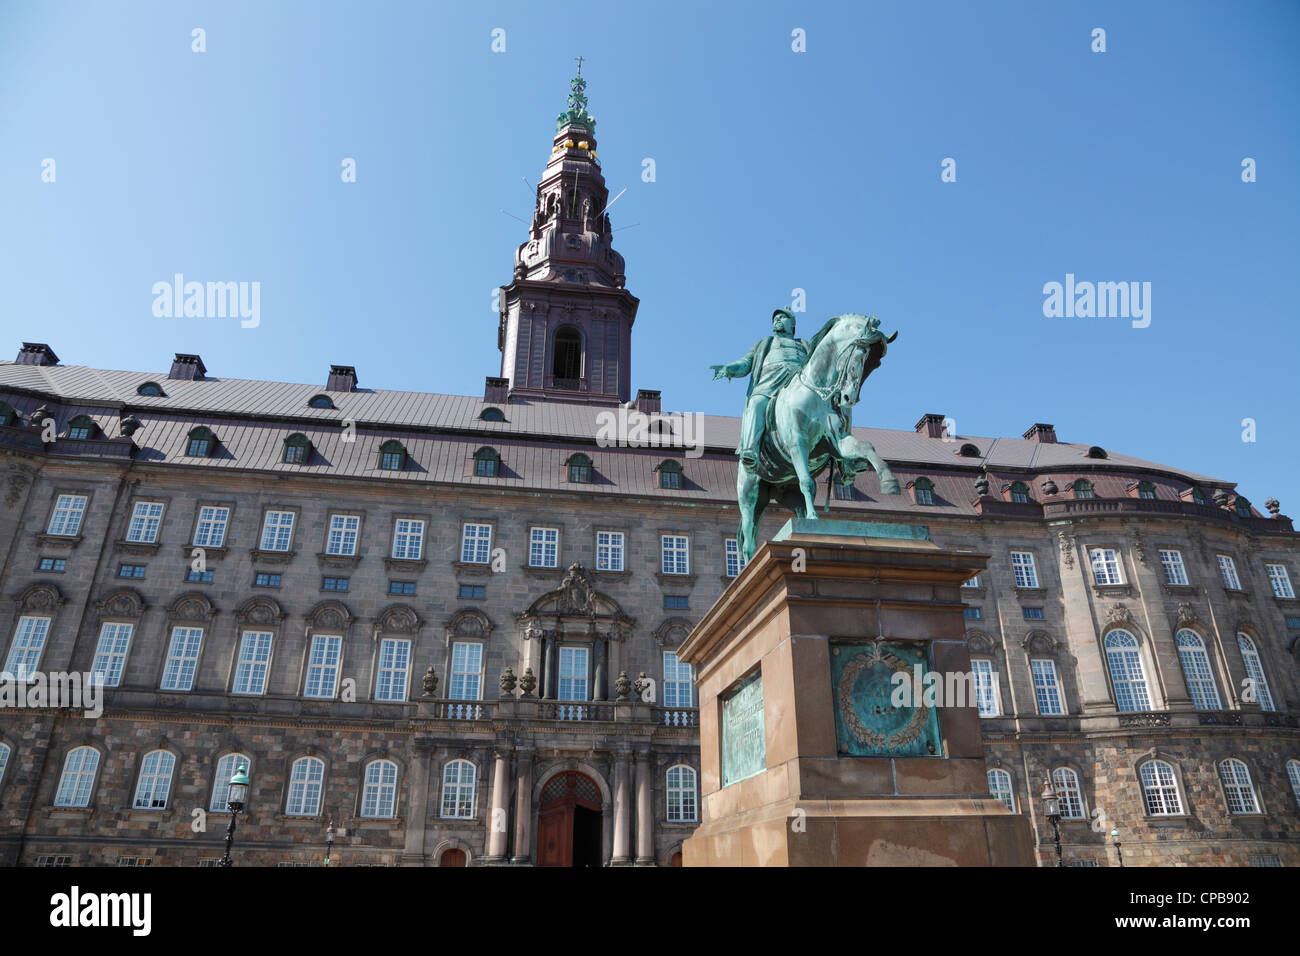 El castillo y la plaza del Castillo Christiansborg con la estatua ecuestre. El edificio del parlamento danés en Copenhague, Dinamarca Foto de stock